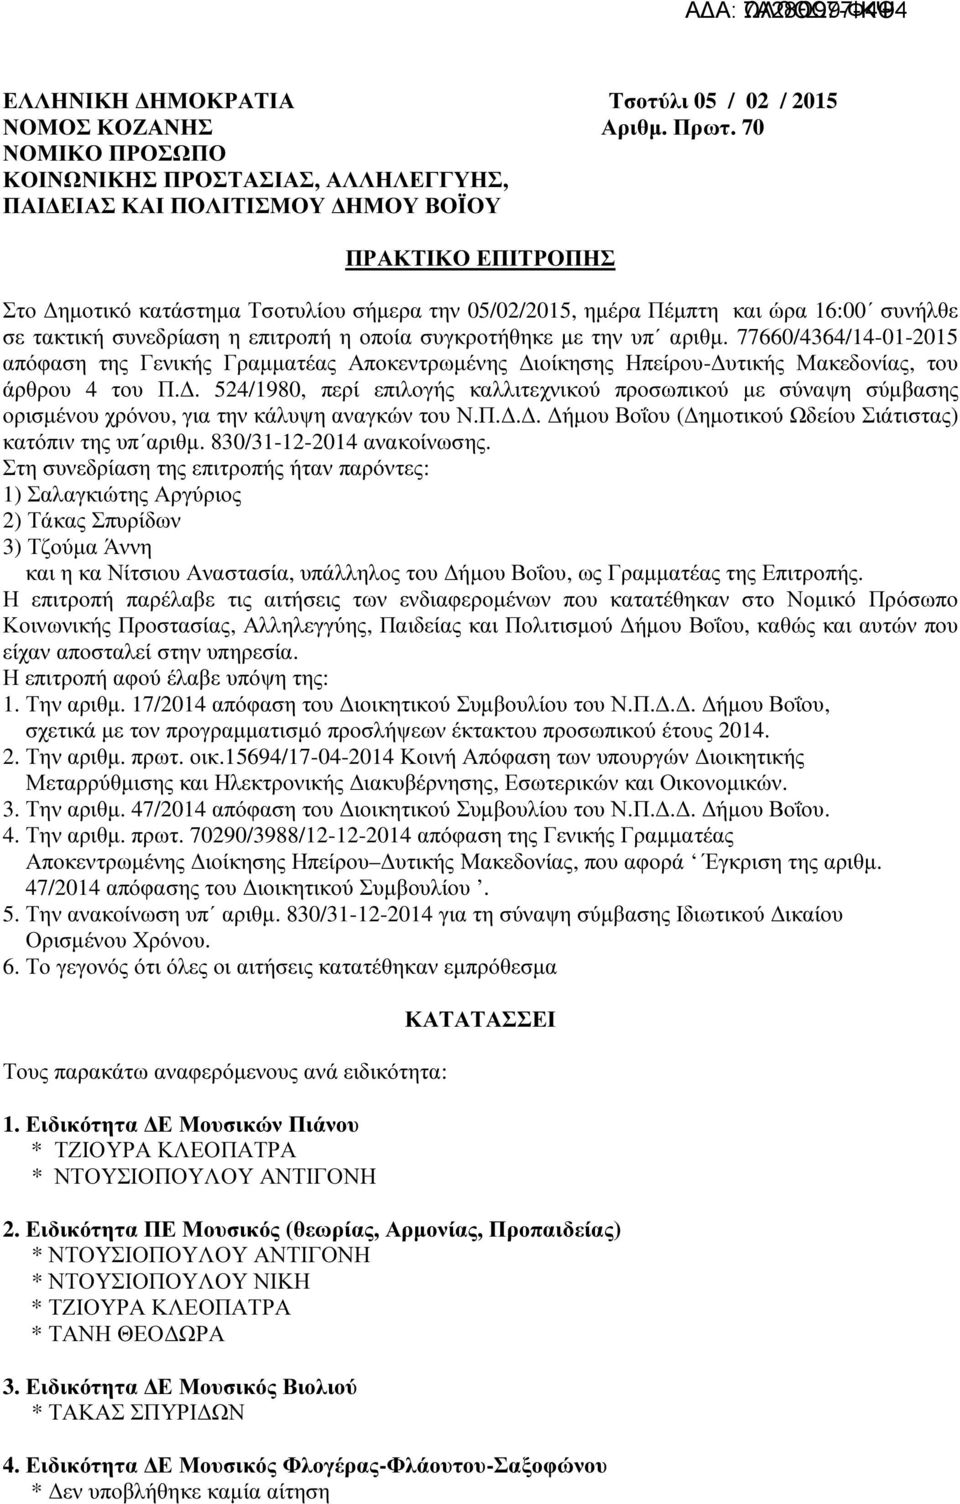 σε τακτική συνεδρίαση η επιτροπή η οποία συγκροτήθηκε µε την υπ αριθµ. 77660/4364/14-01-2015 απόφαση της Γενικής Γραµµατέας Αποκεντρωµένης ιοίκησης Ηπείρου- υτικής Μακεδονίας, του άρθρου 4 του Π.